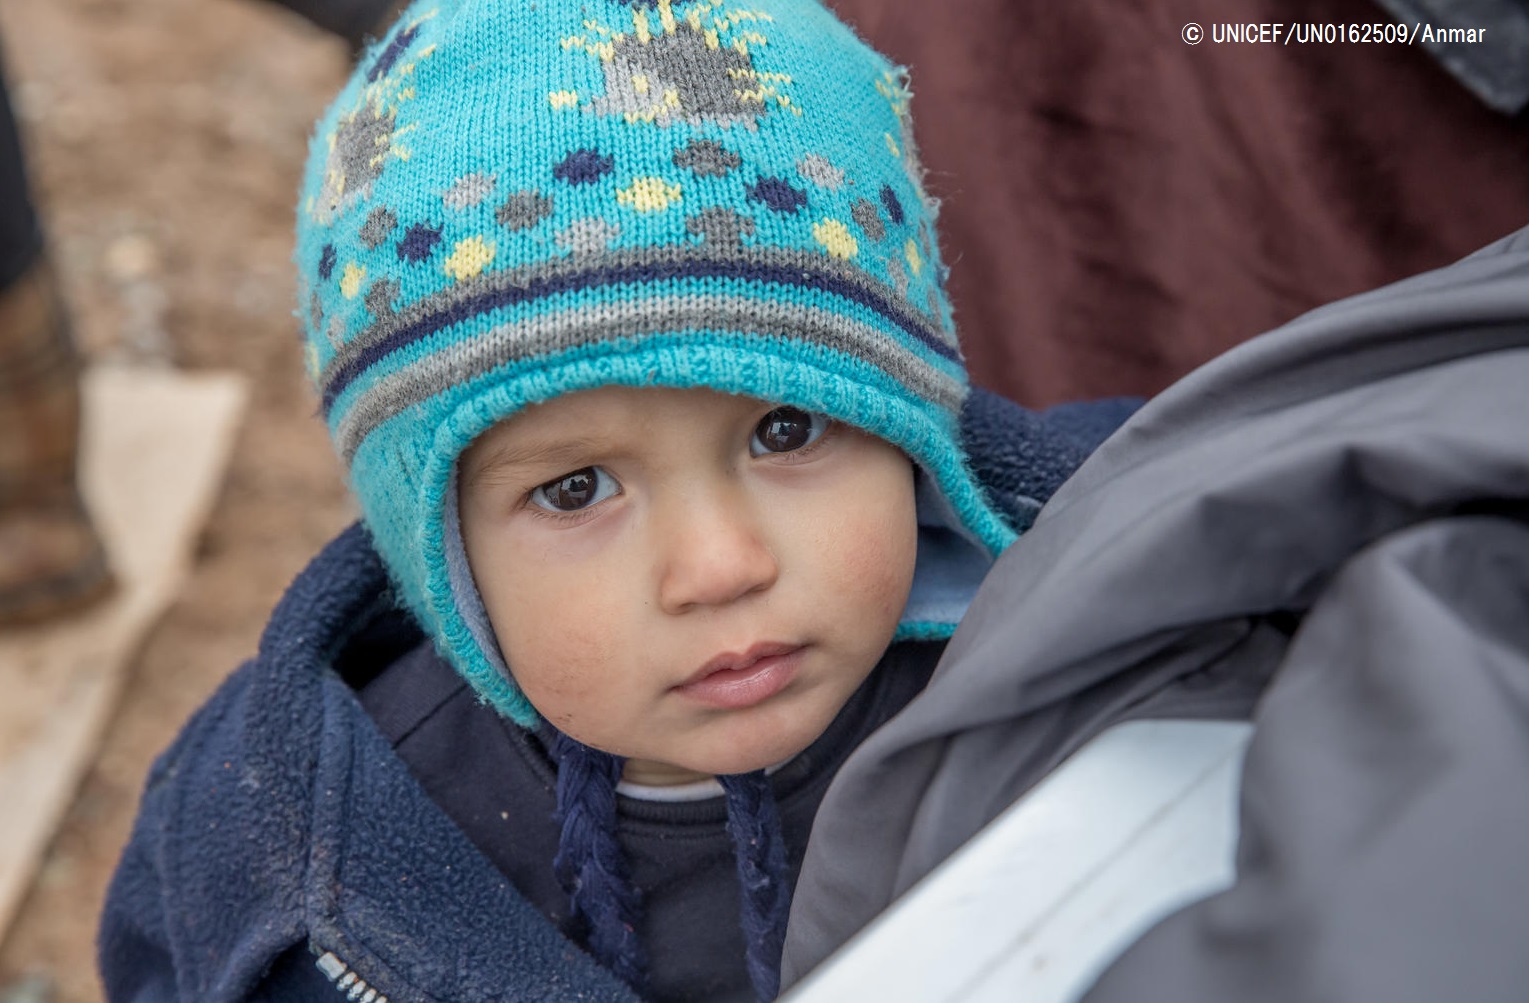 イラク シンジャル ヤジディ教徒の子どもたちに暖かい服を 山岳地帯 氷点下のなかテントで暮らす プレスリリース 公益財団法人日本ユニセフ協会のプレスリリース